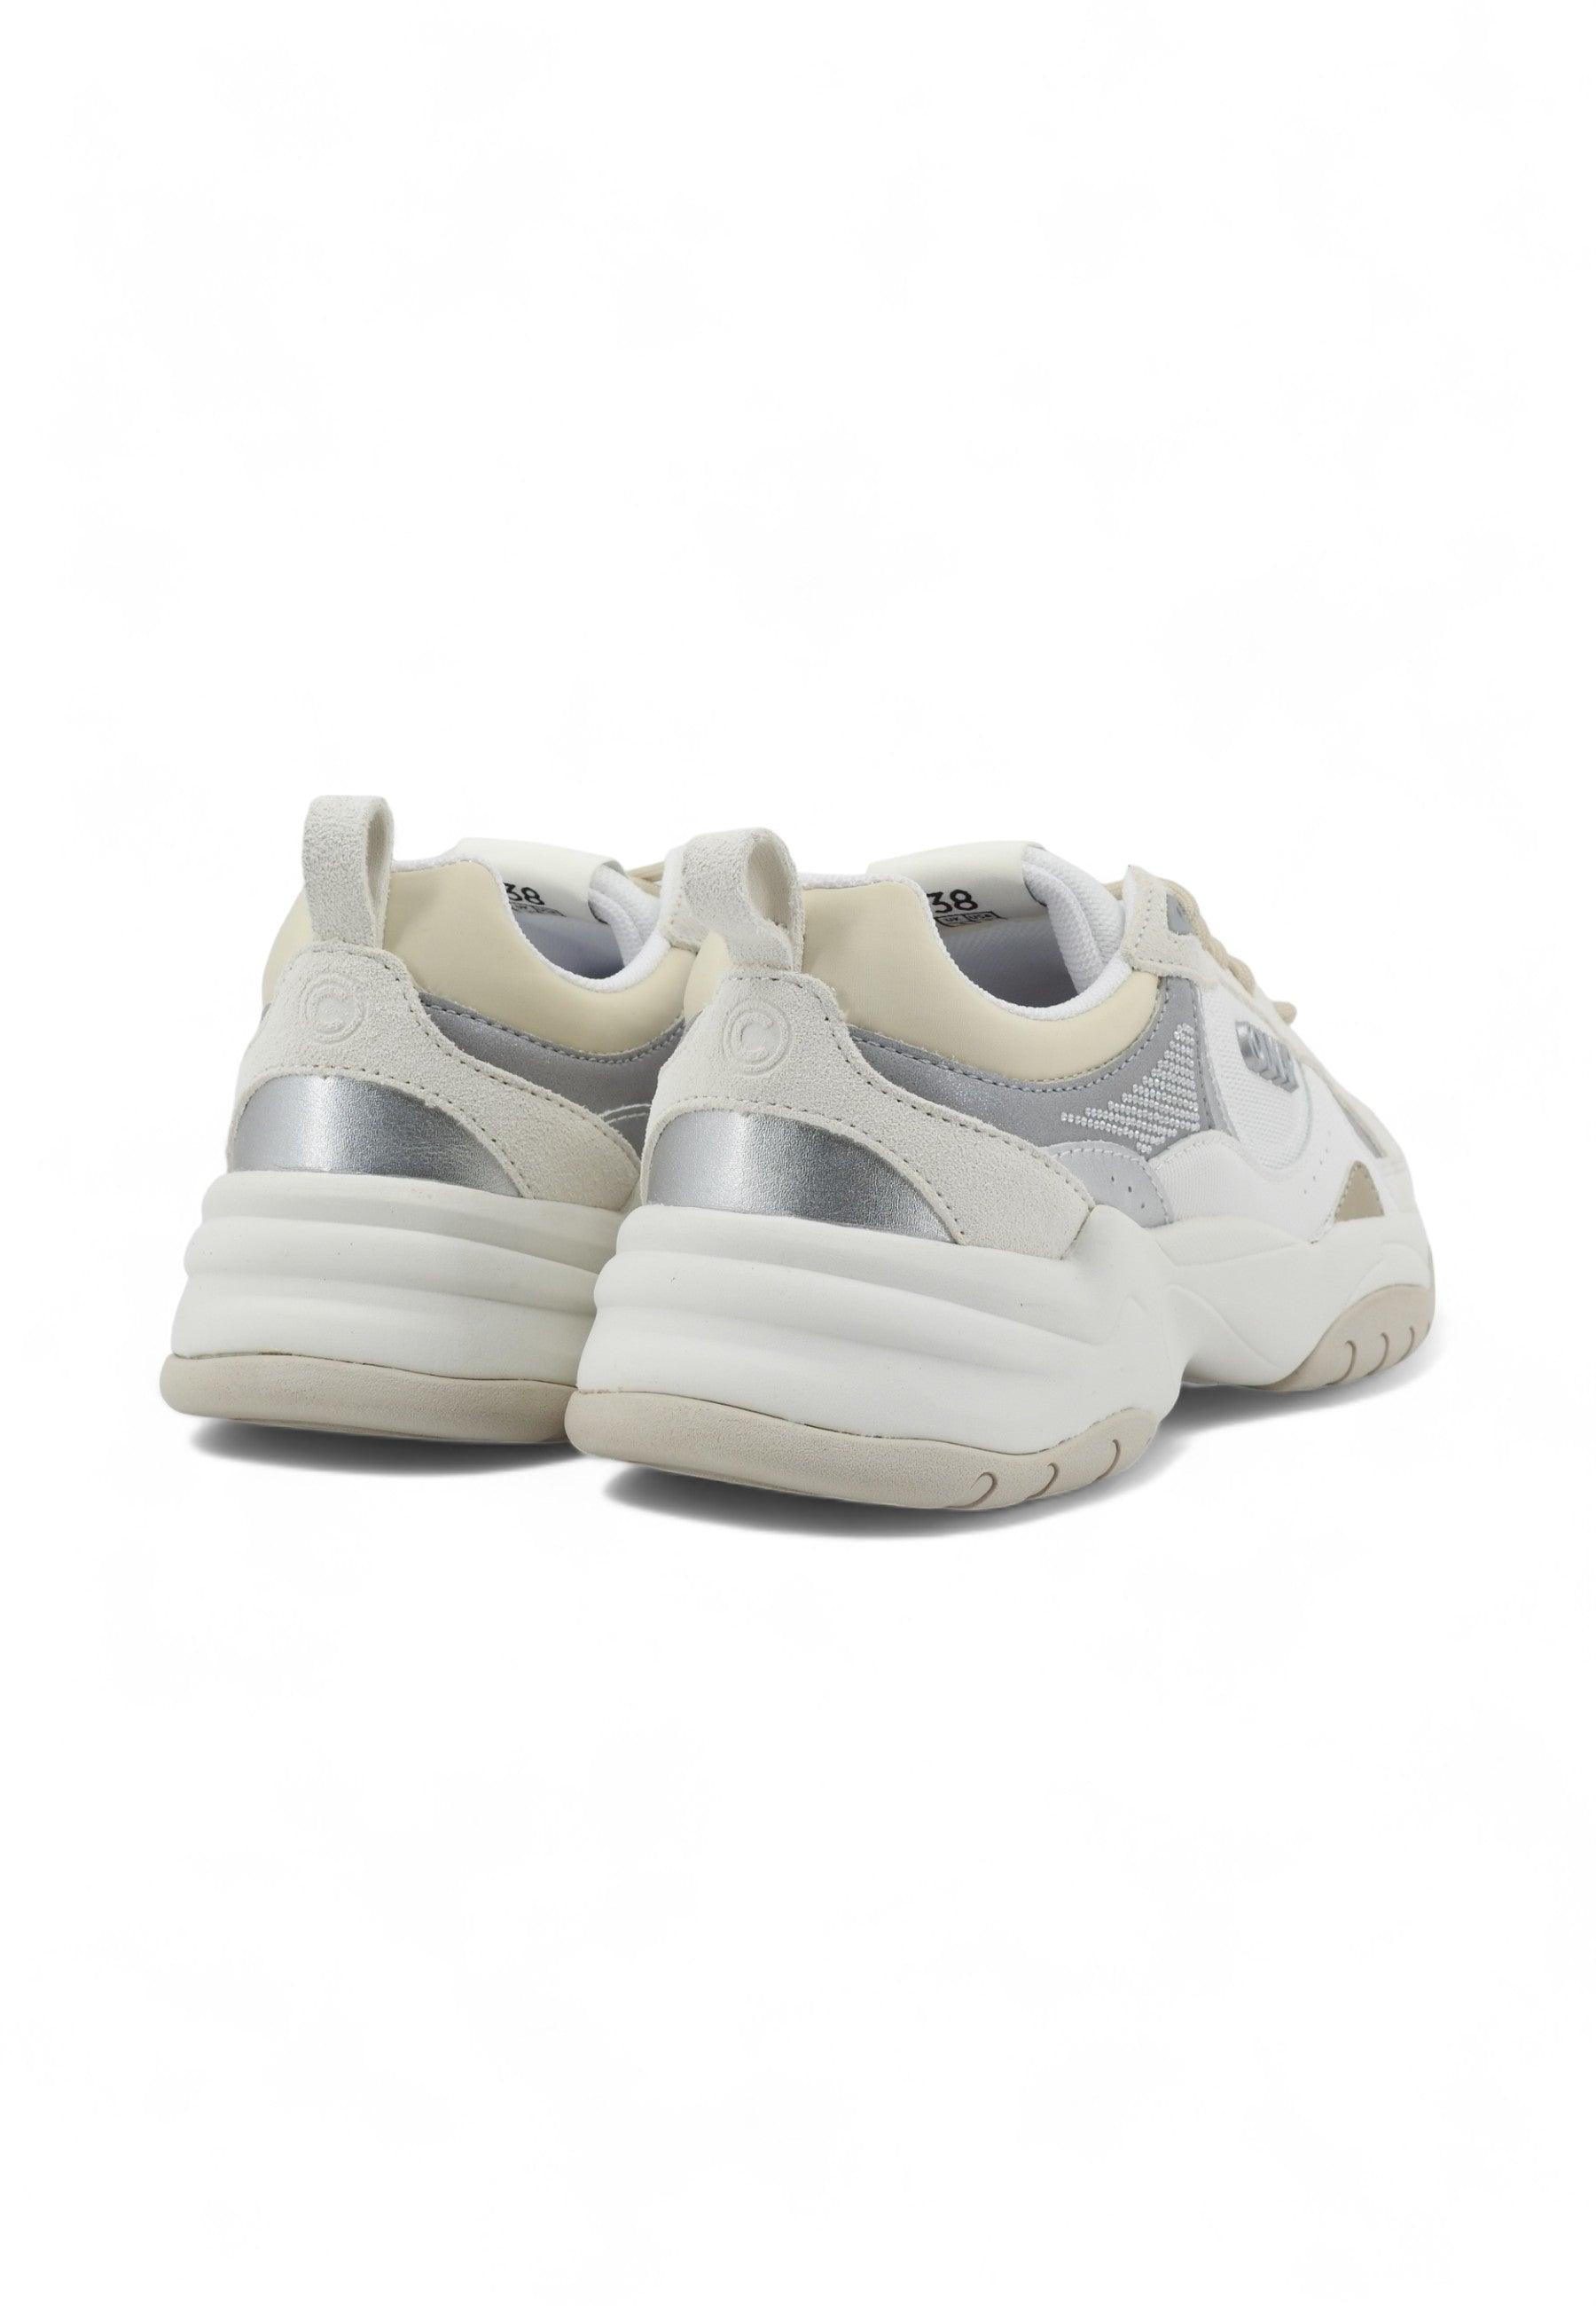 COLMAR Sneaker Donna White Warm Gray Silver TESS STARLIGHT - Sandrini Calzature e Abbigliamento